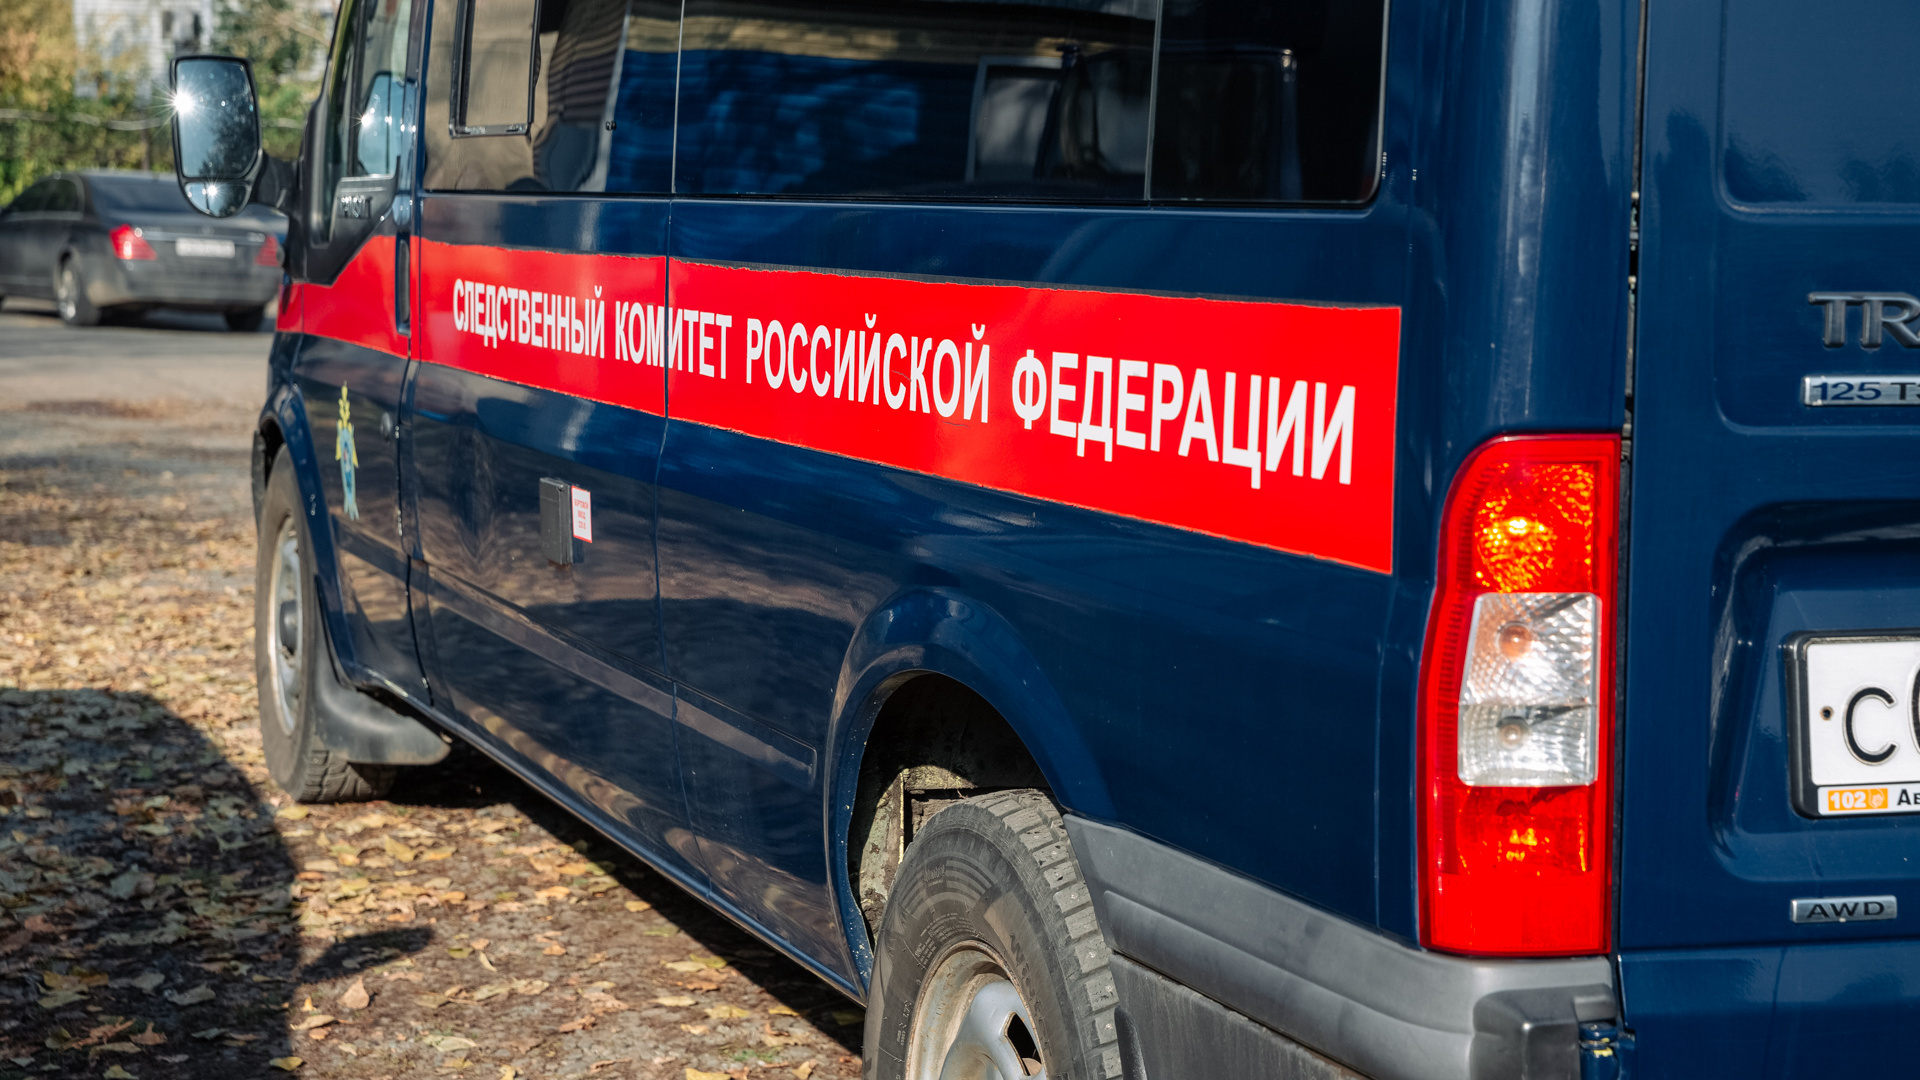 Тело девочки-подростка обнаружено в лесу в Кузбассе. Накануне она поссорилась с матерью и сбежала из дома